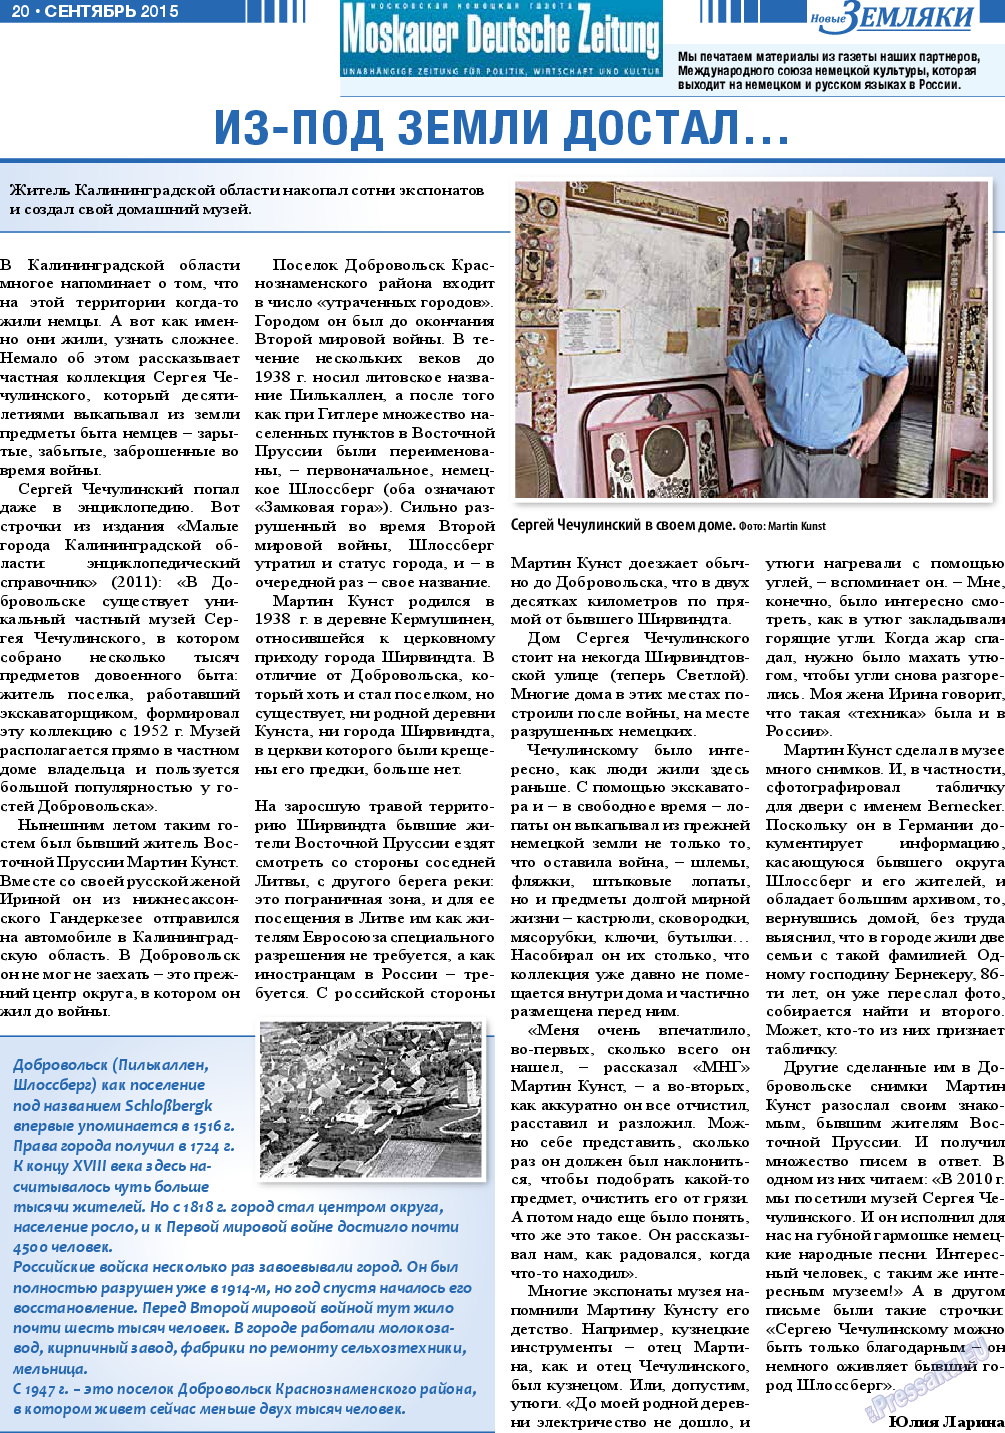 Новые Земляки (газета). 2015 год, номер 9, стр. 20